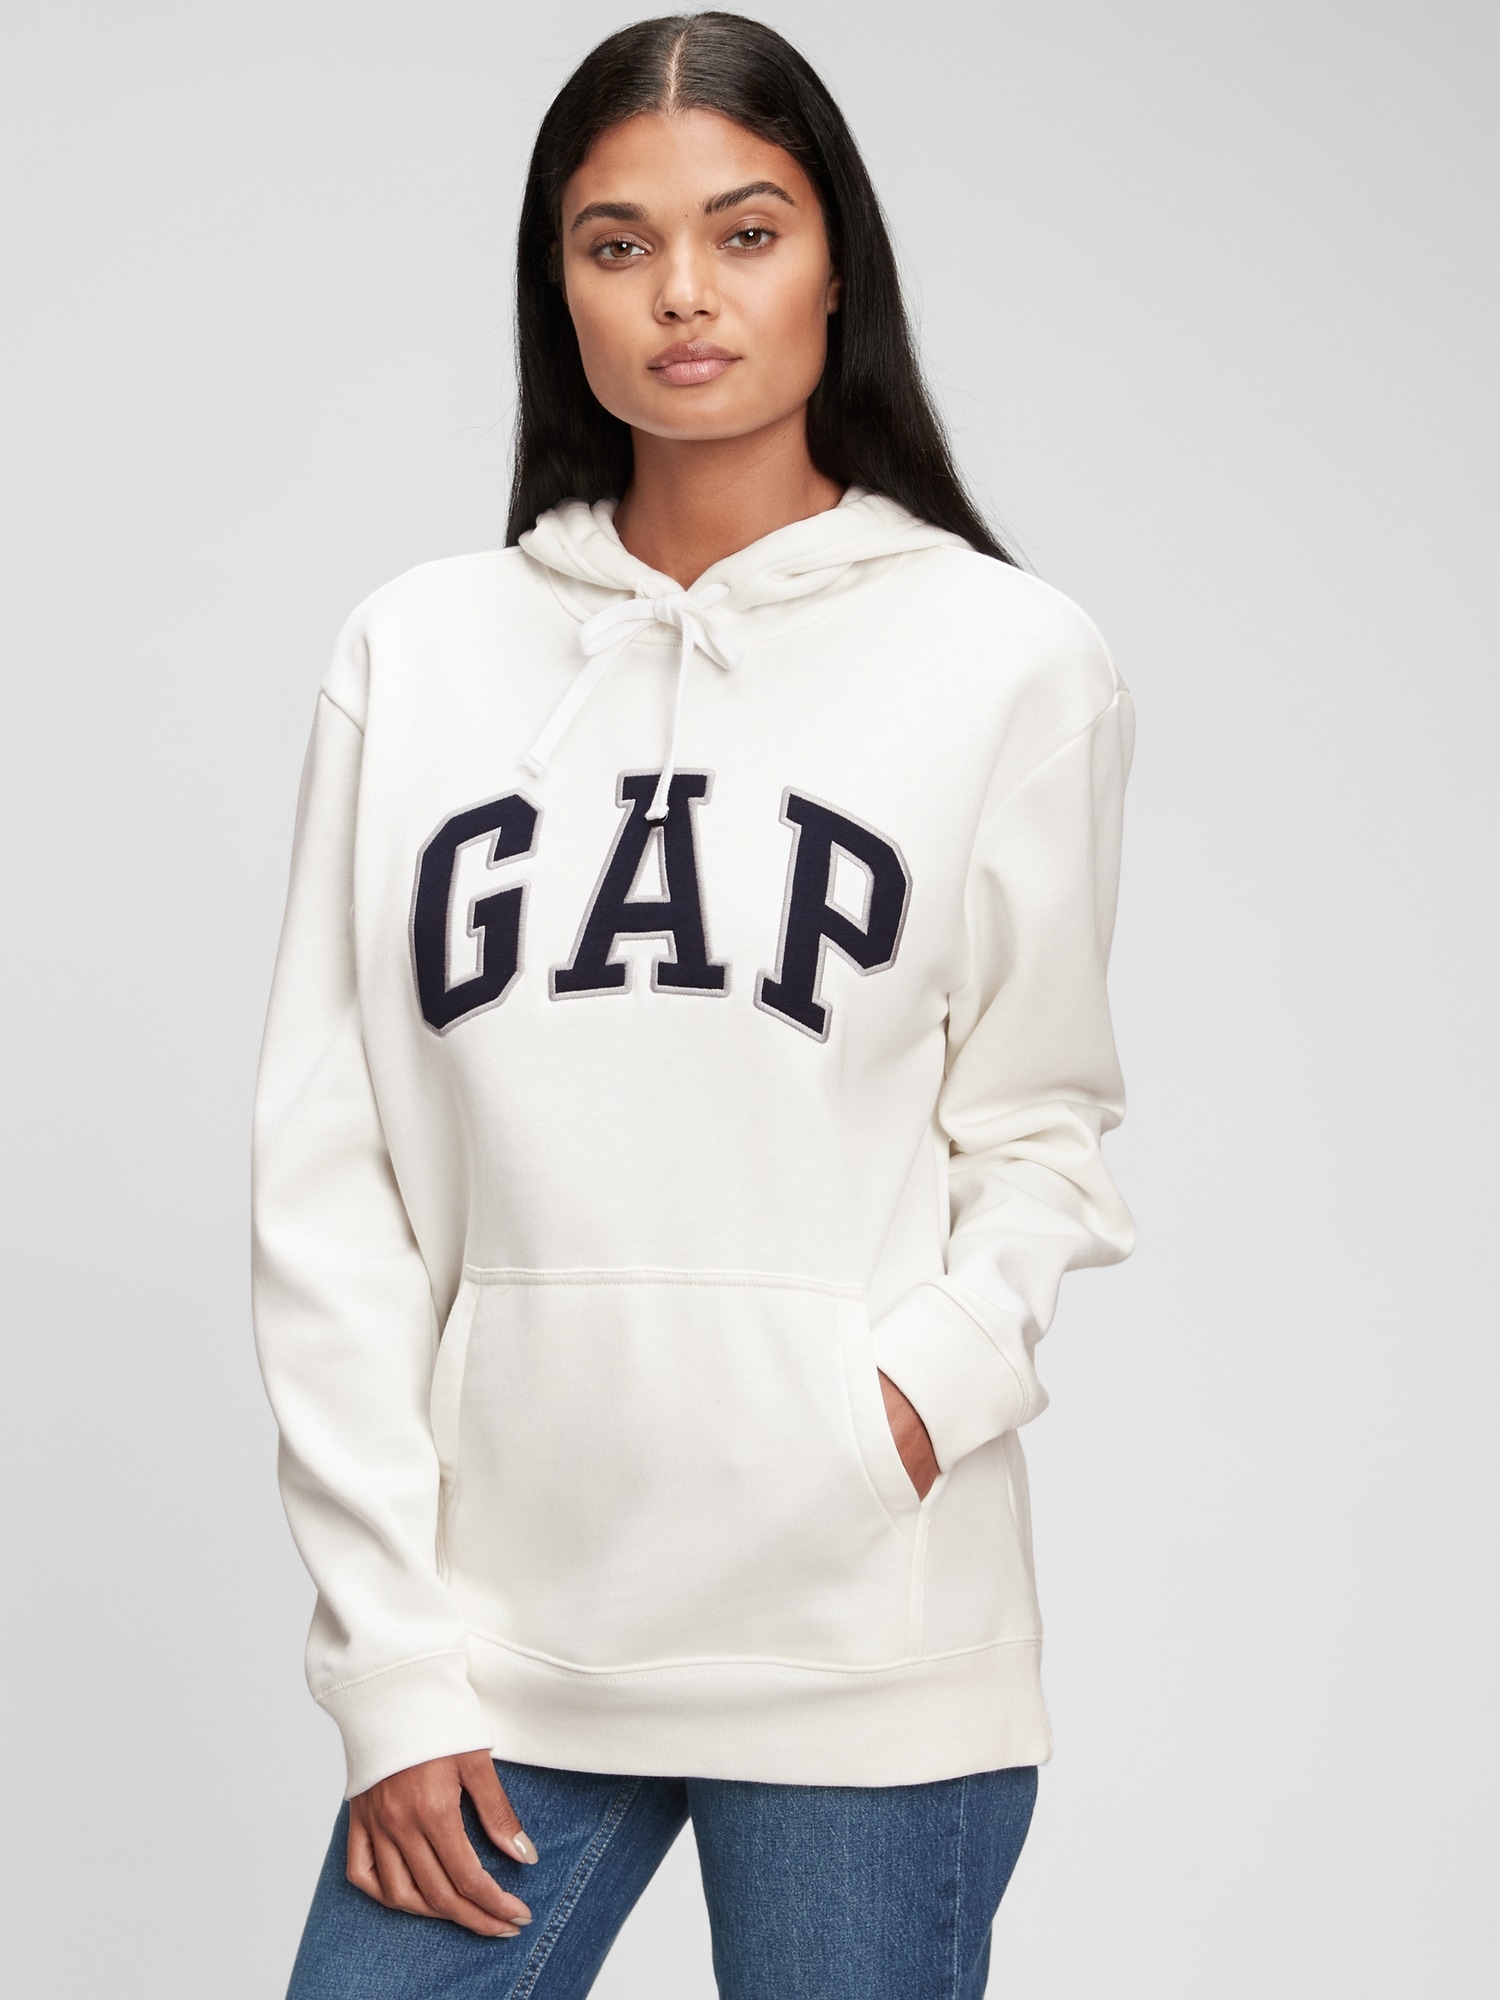 Gap Logo Pullover Bra